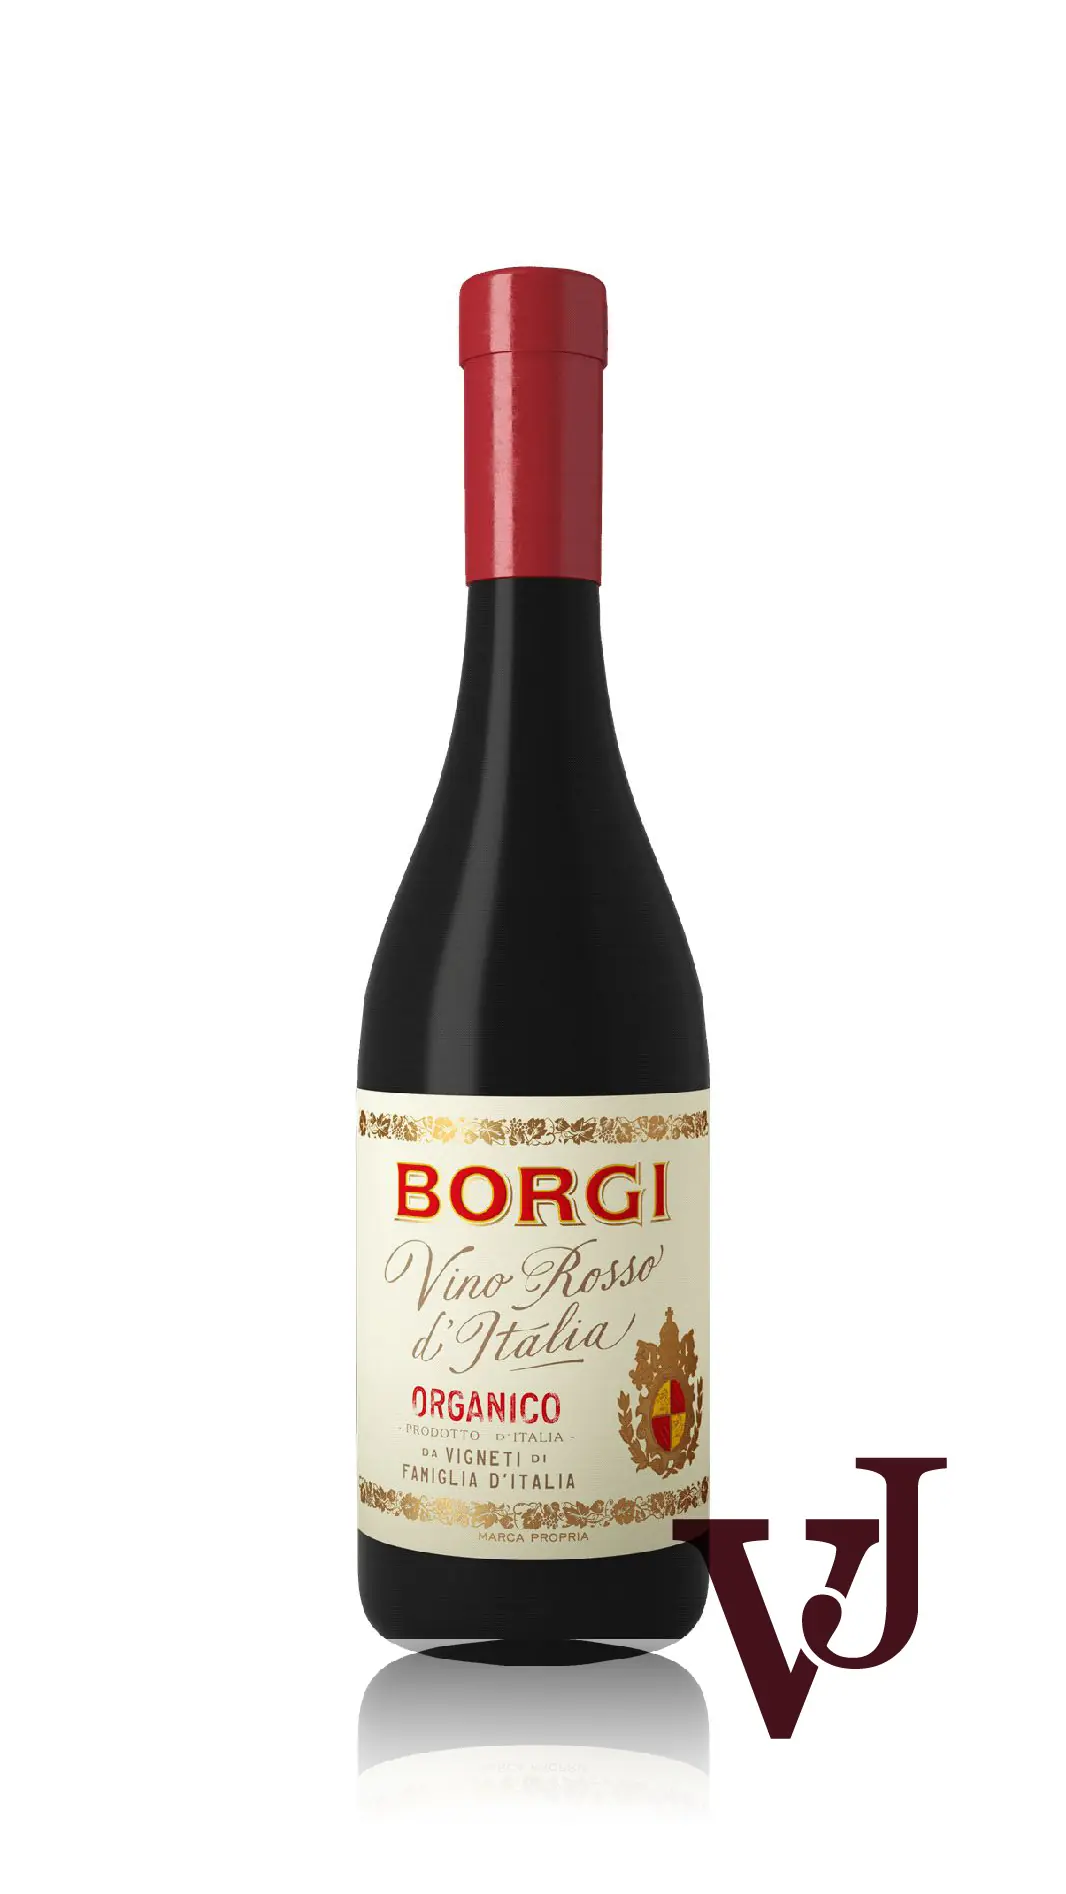 Rött Vin - Borgi Organico artikel nummer 601301 från producenten Cantinetta Vini från området Italien - Vinjournalen.se